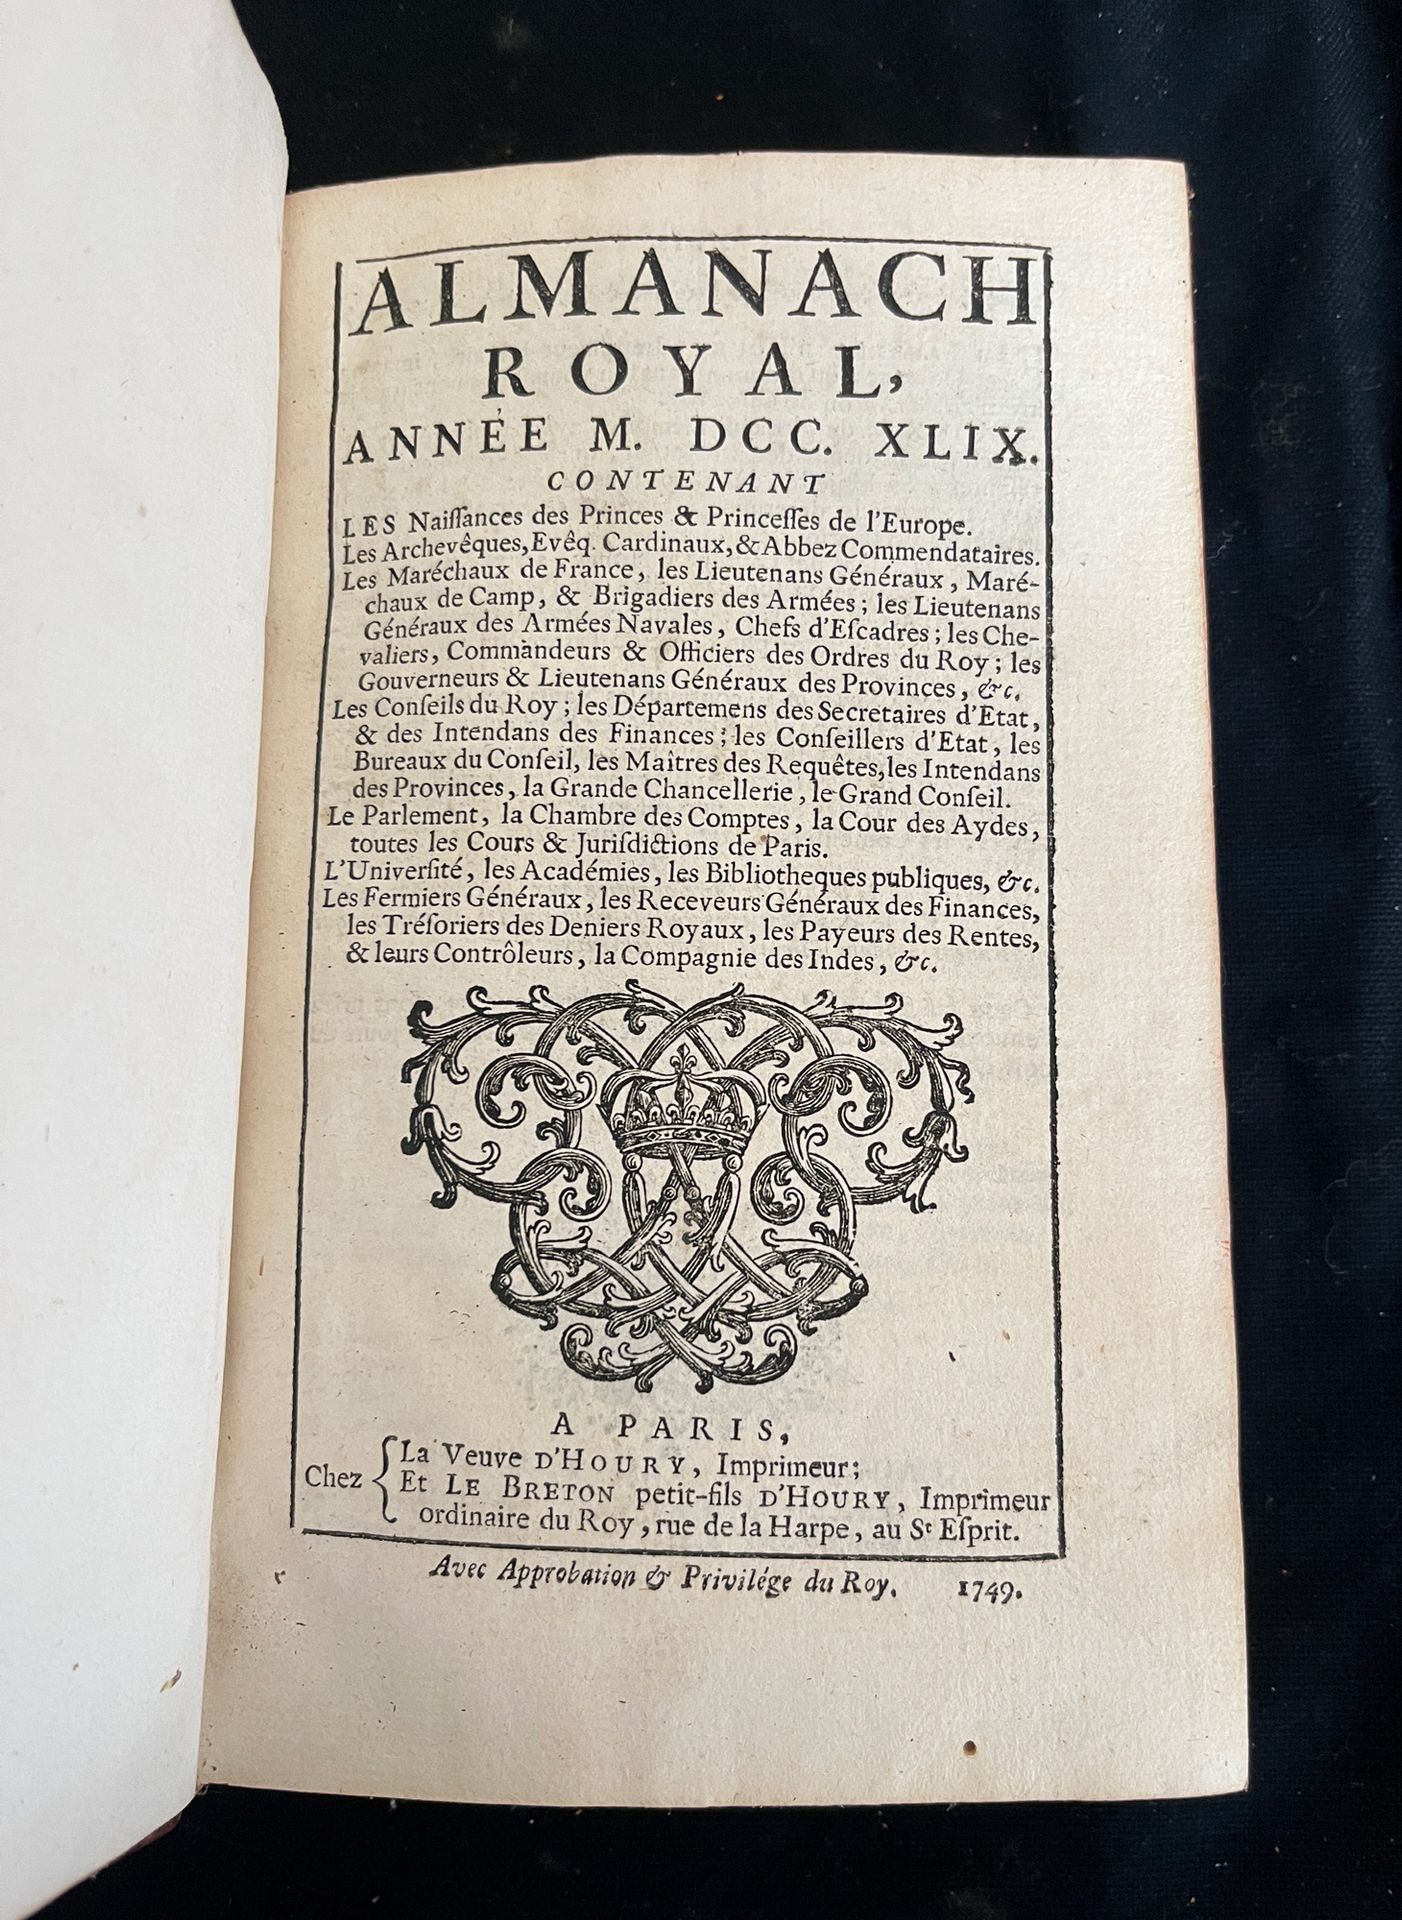 Null [ALMANACH]
Almanach royal pour l'an MDCCXLIX. Paris chez veuve d'Houry et l&hellip;